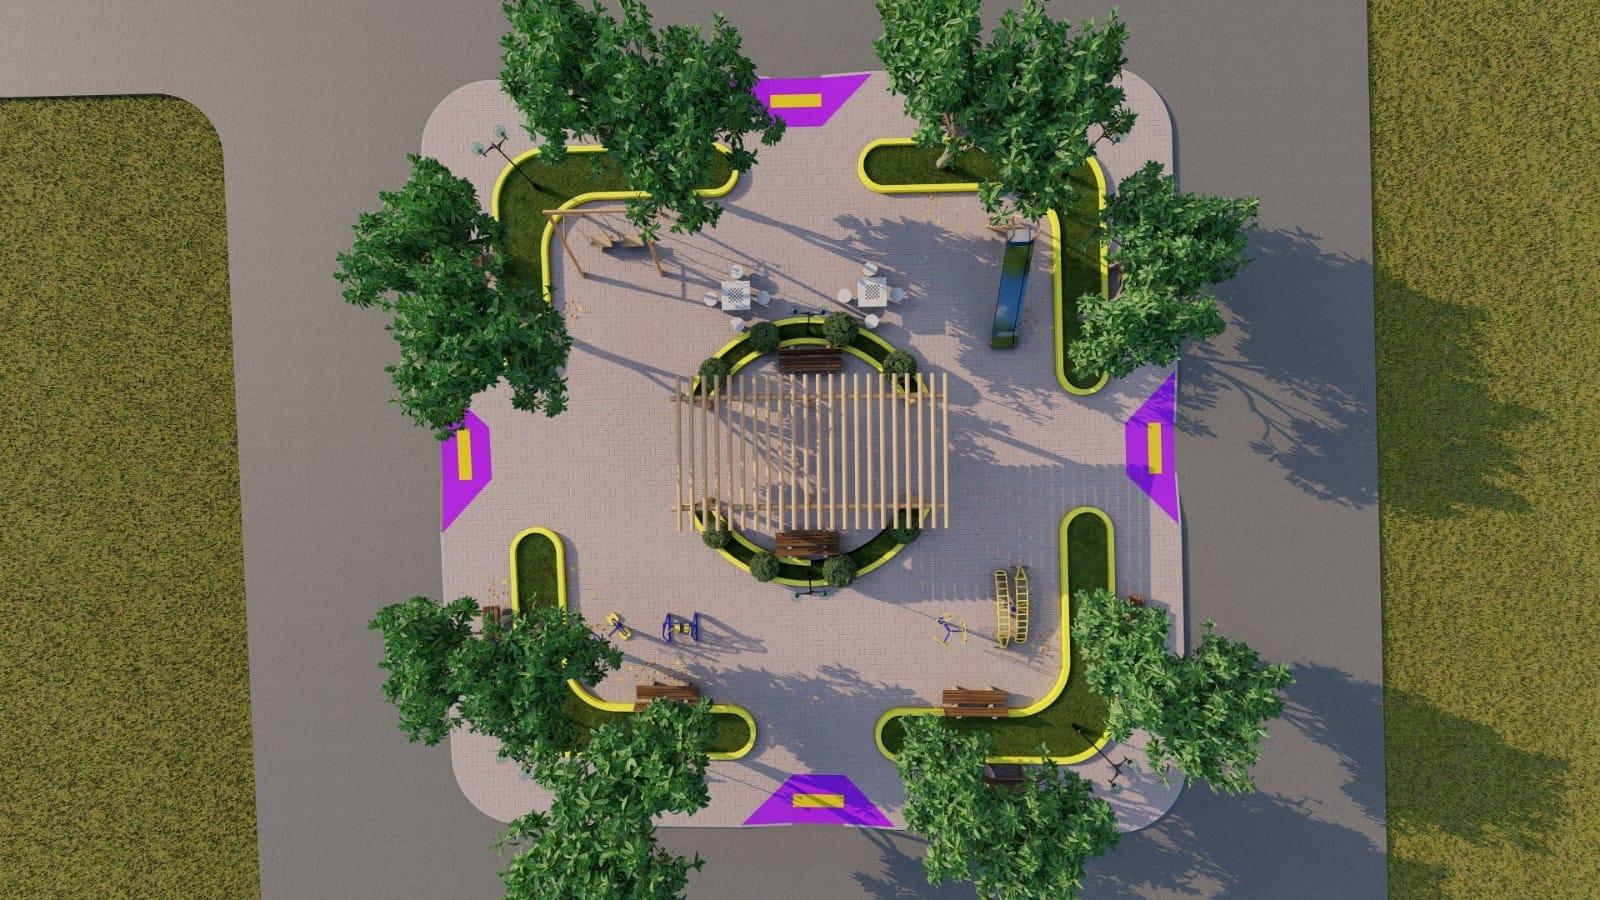 Prefeito Lili anuncia construção de nova praça e calçamento de ruas em São João da Boa Nova. Veja o projeto em 3D